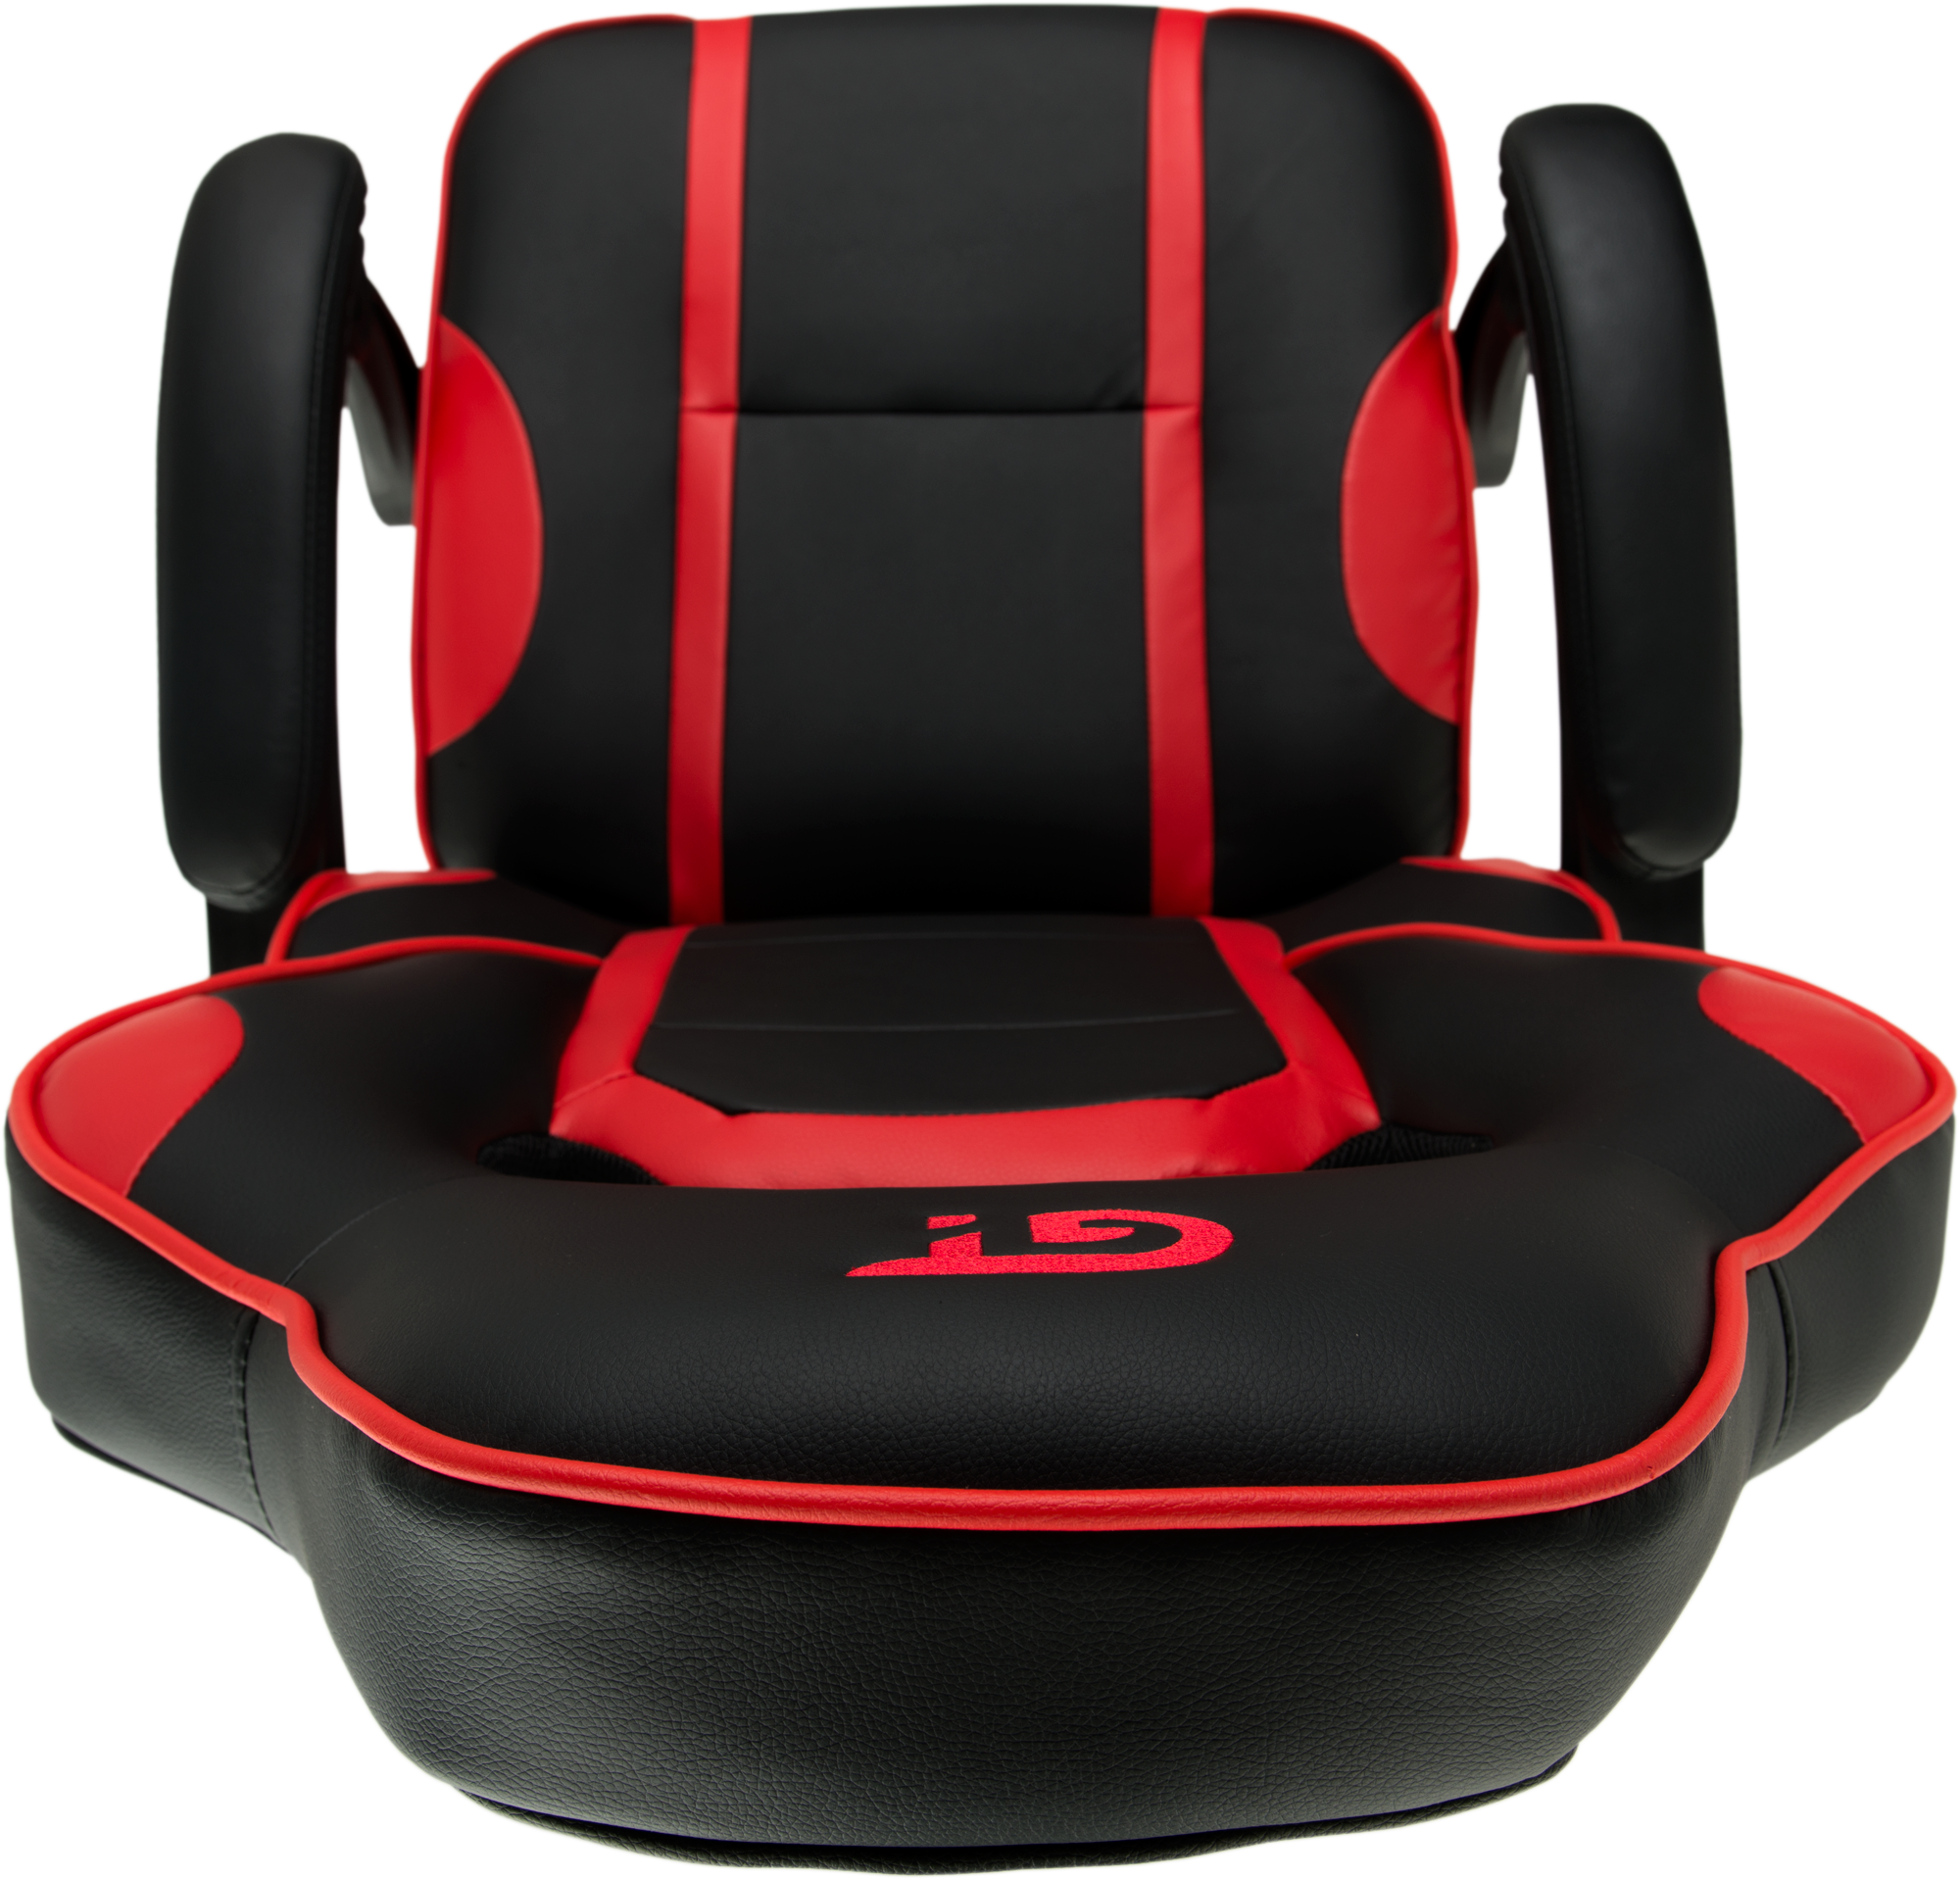 Геймерське крісло GT Racer чорне з червоним (X-2749-1 Black/Red) - фото 10